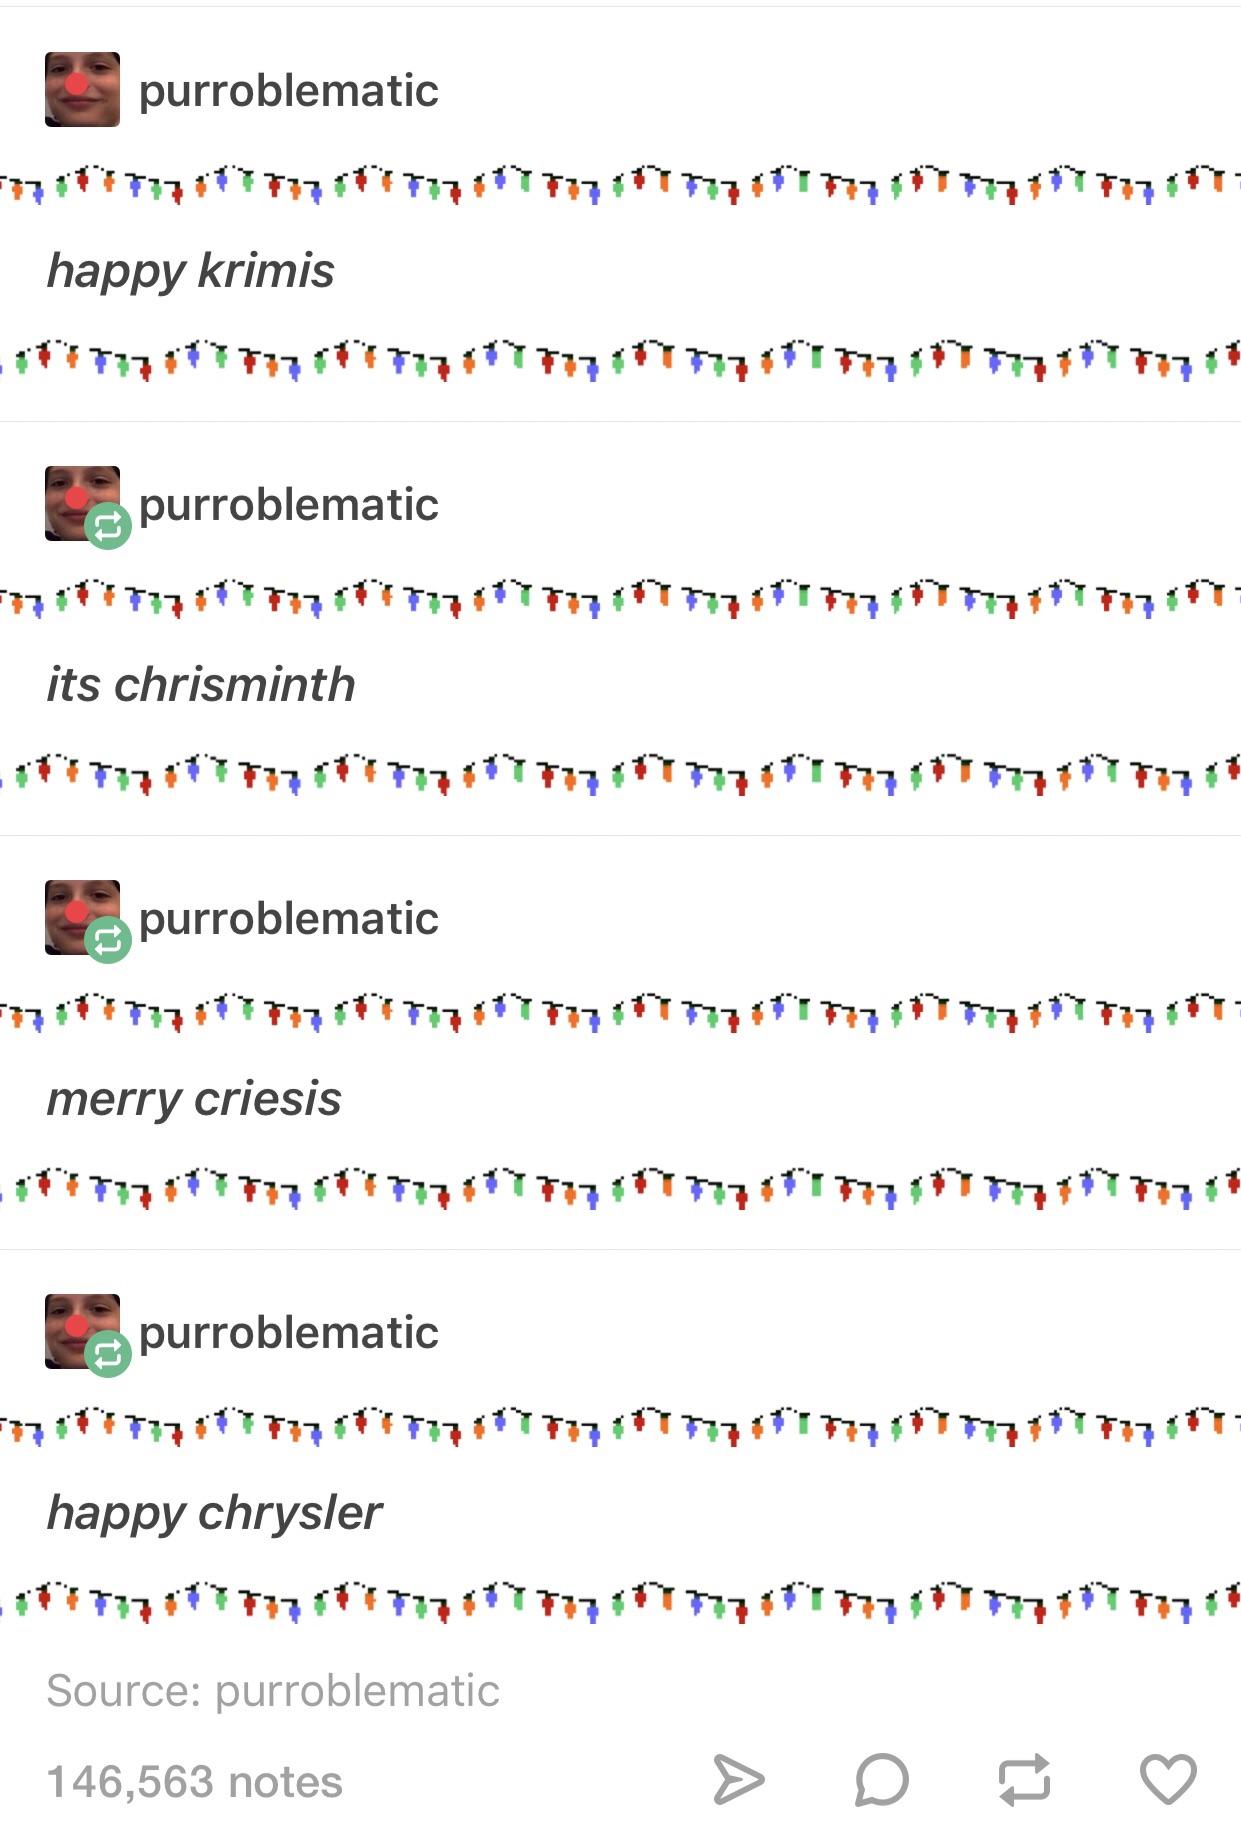 Merry+chritmuhs